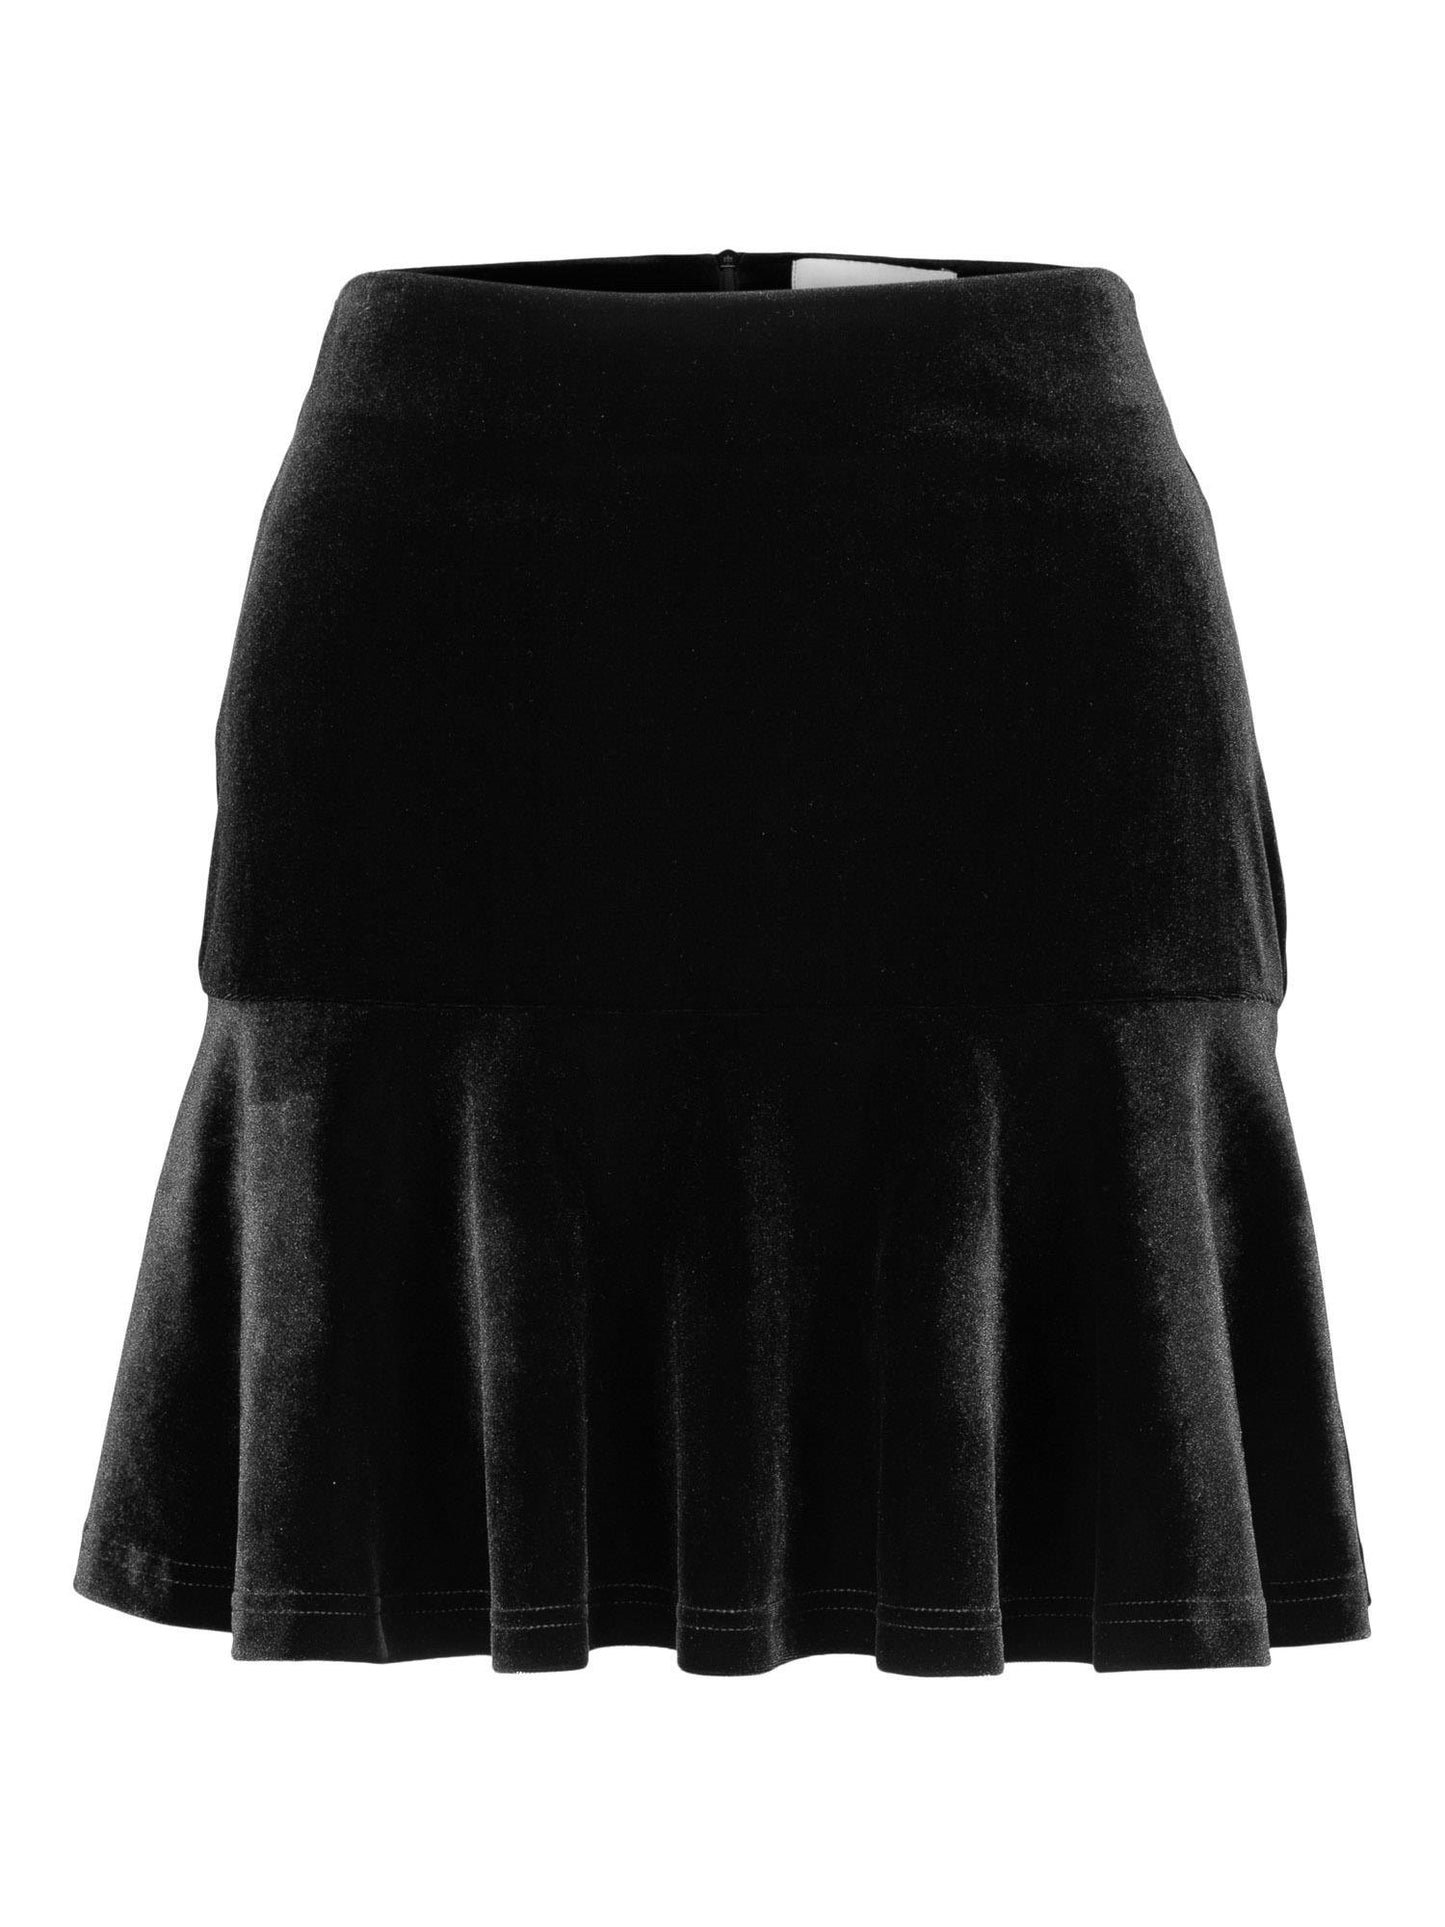 Indie Velour Skirt Black - No22 Damplassen